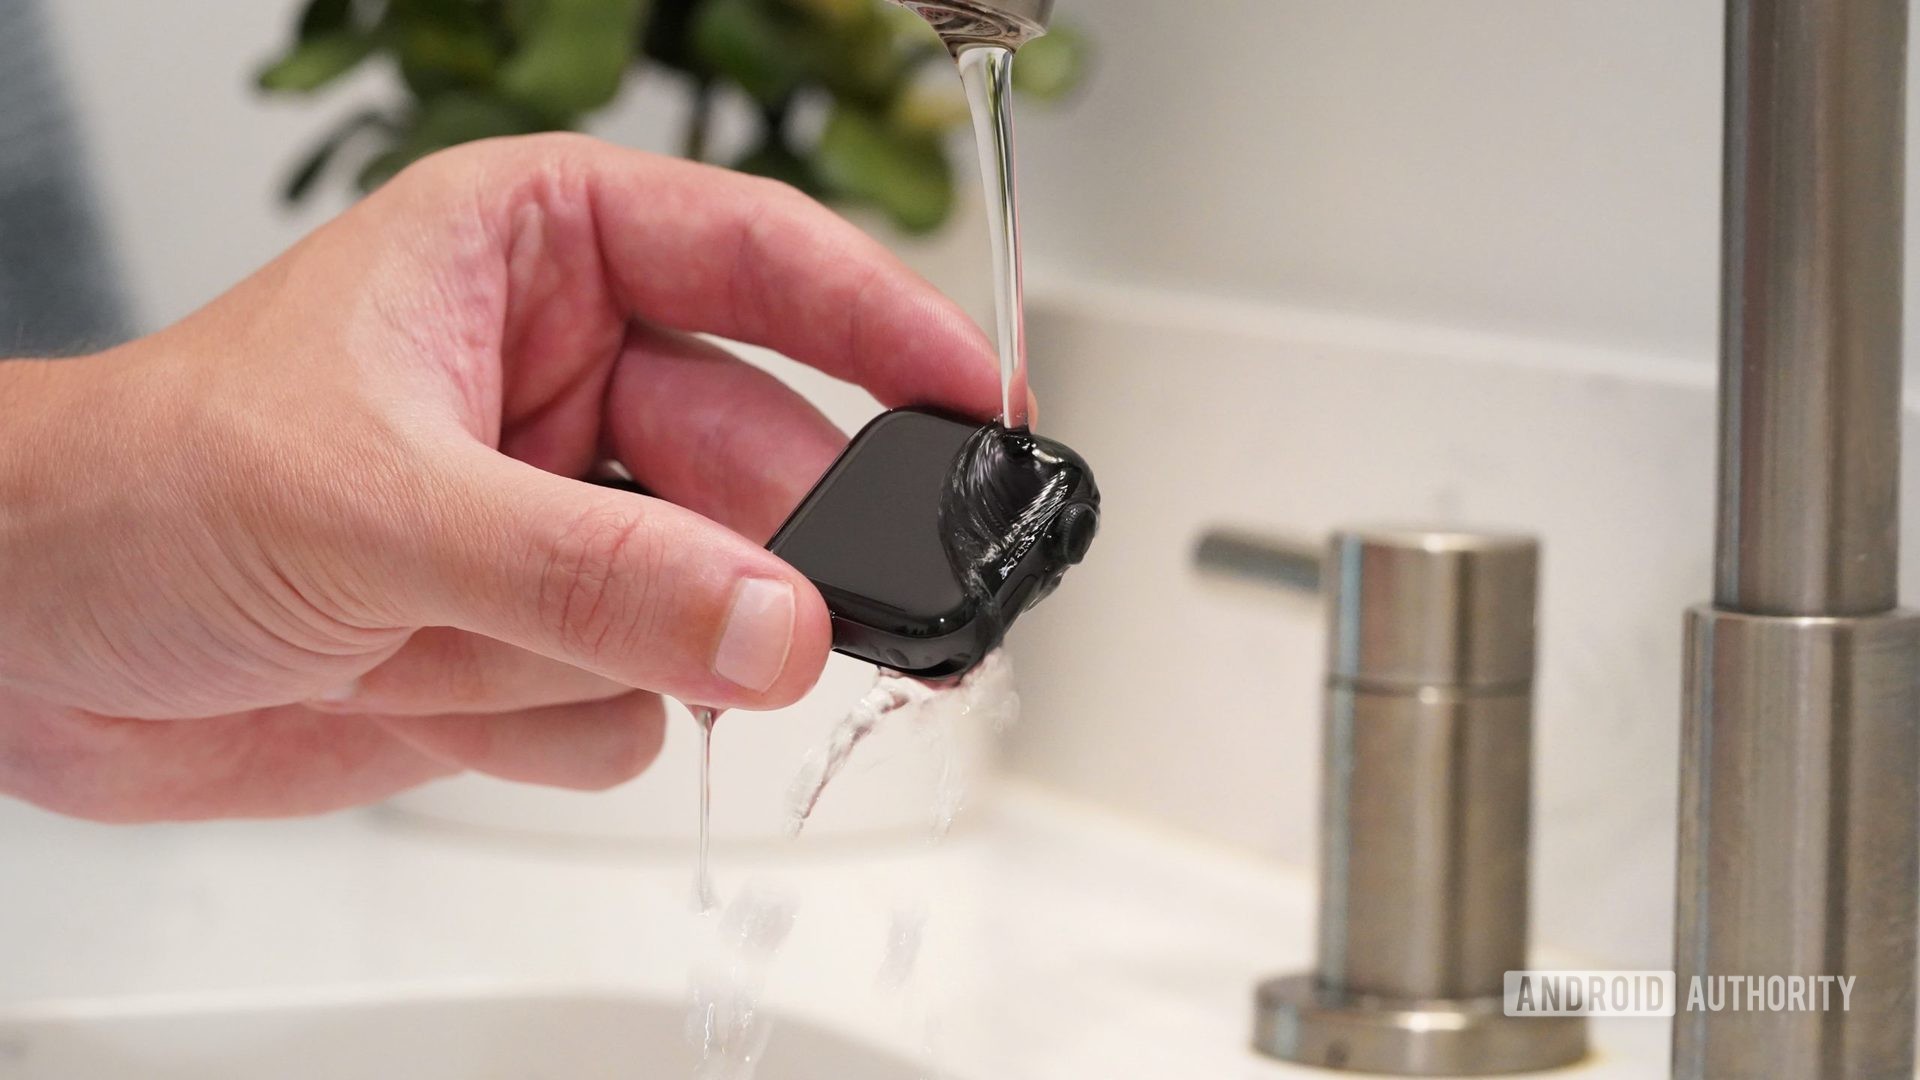 Tangan pria memegang Apple Watch Series 6 di bawah air hangat yang mengalir rendah untuk membersihkan perangkat.